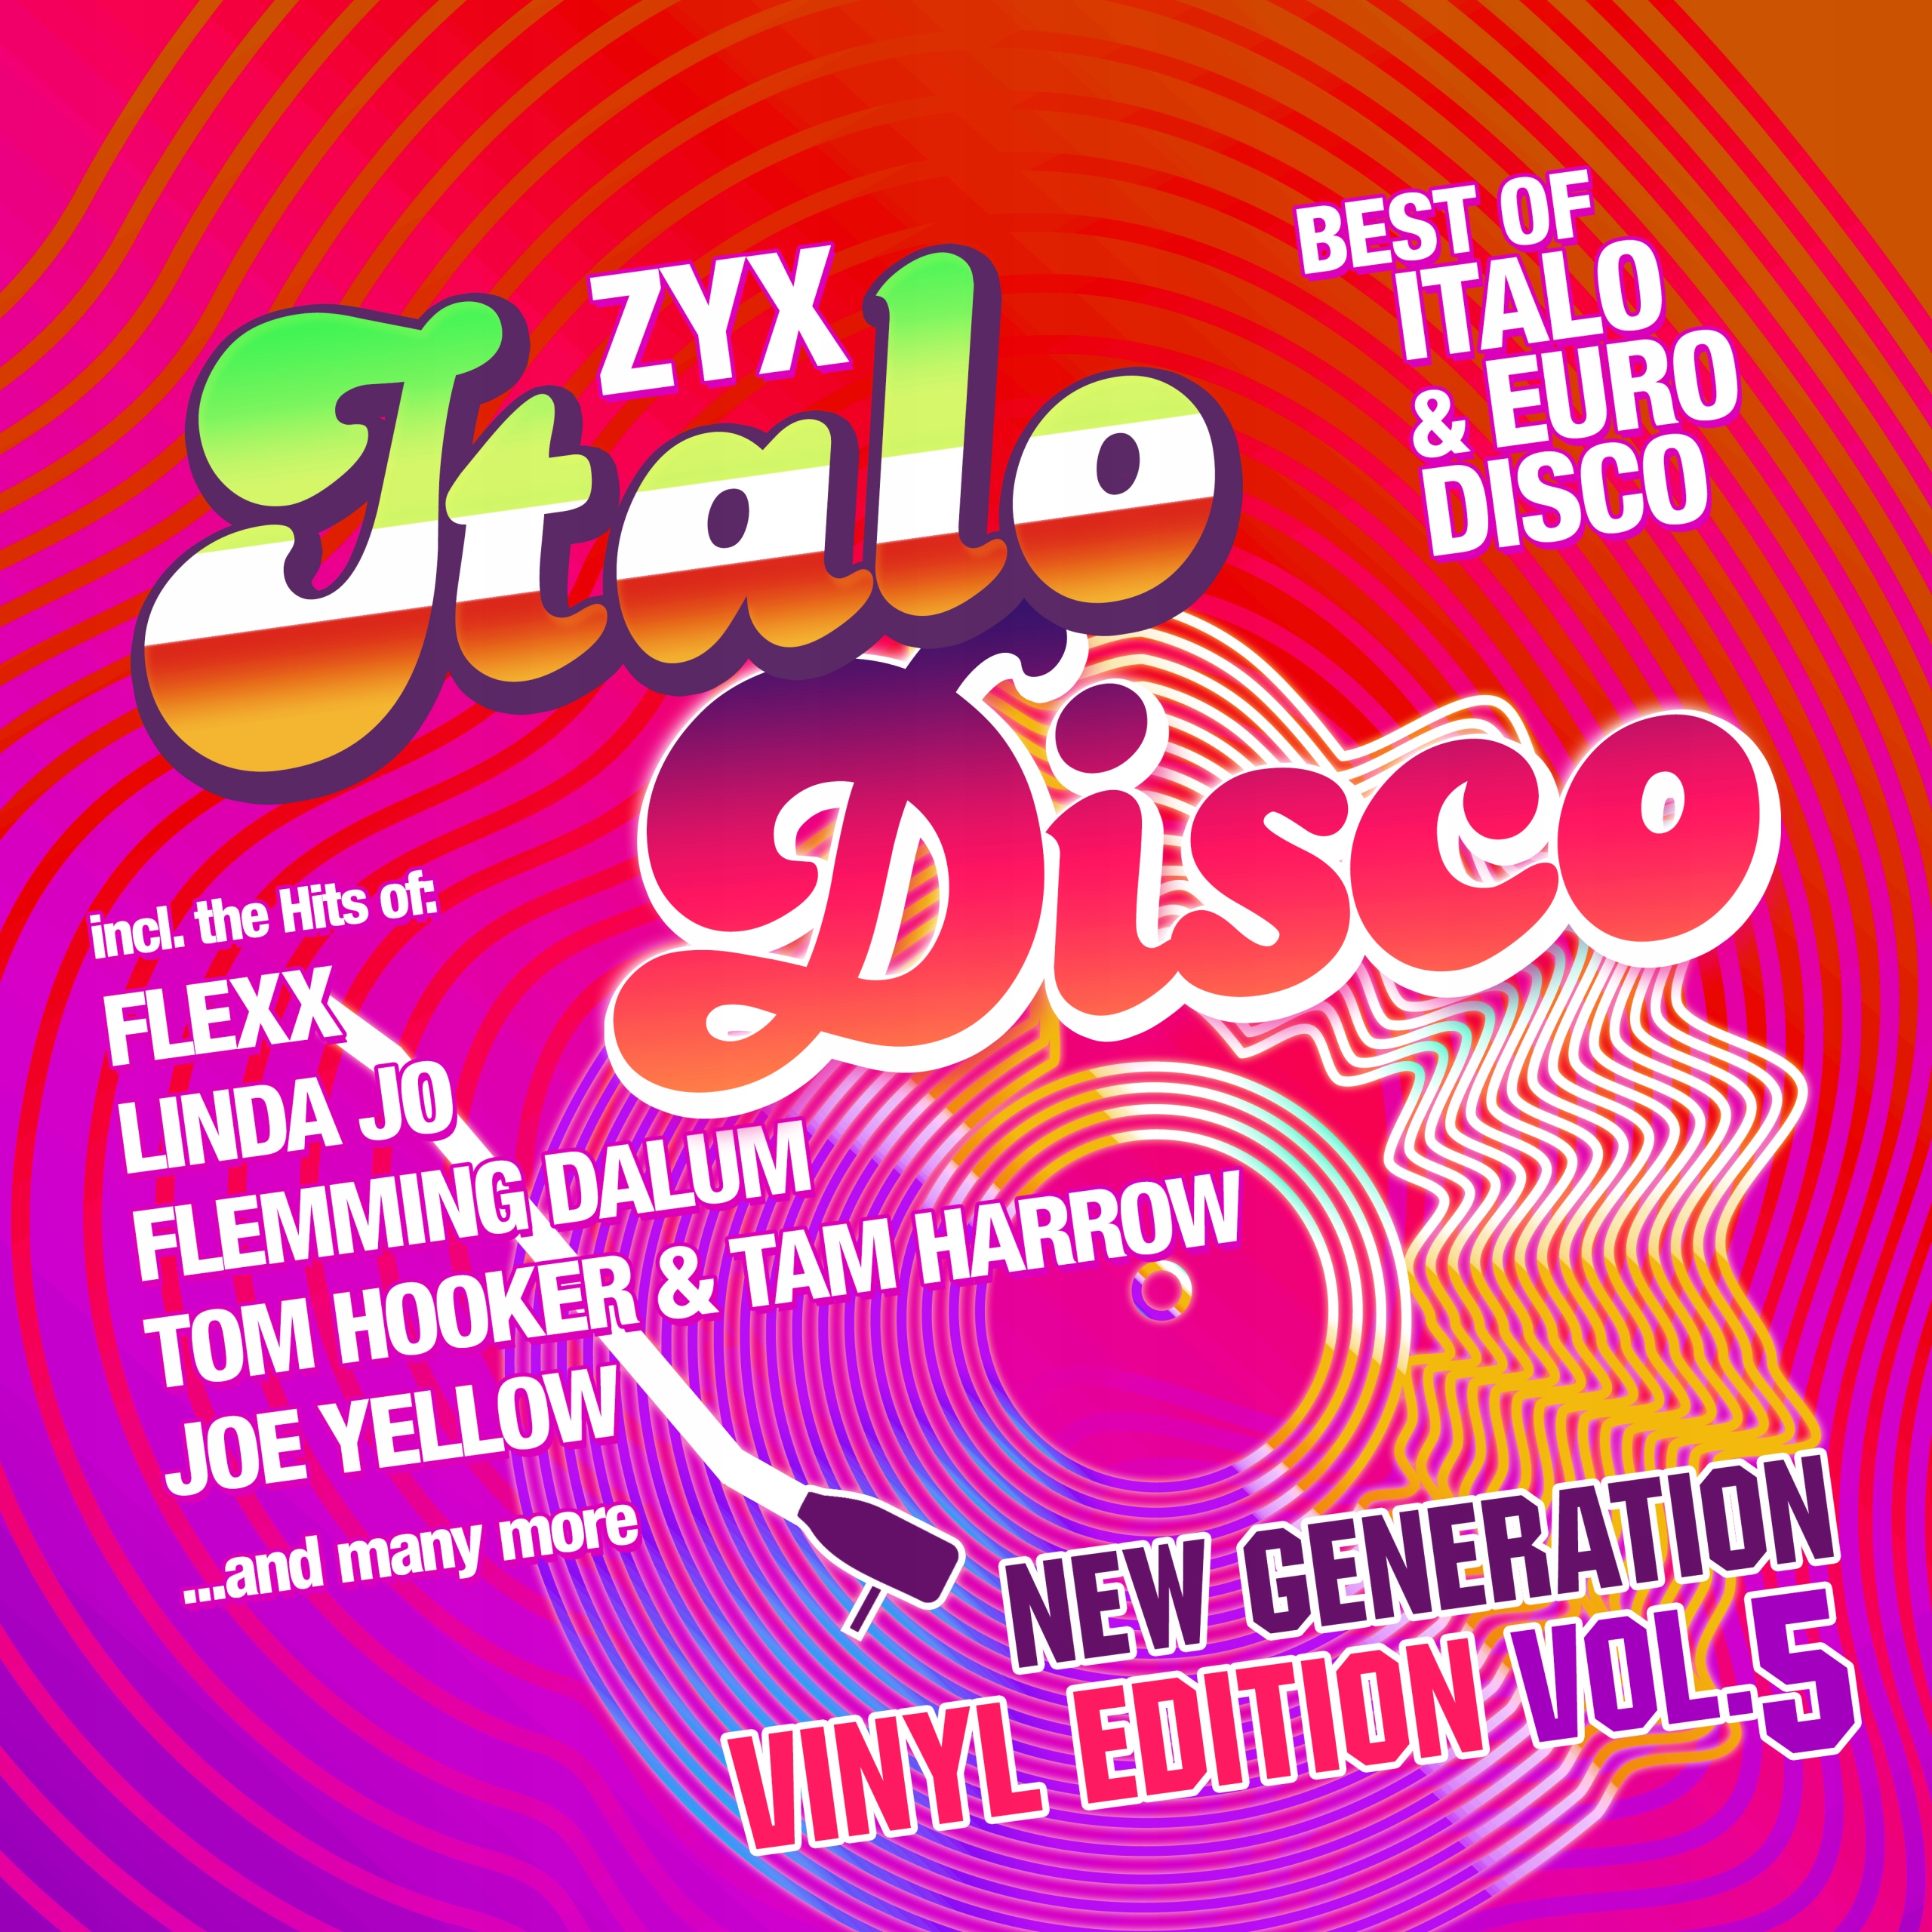 Zyx italo disco new. ZYX Italo Disco New Generation Vol.5. ZYX Italo Disco New Generation Vinyl Edition Vol.5. 2023 - ZYX Italo Disco New Generation Vol.22 (2cd).